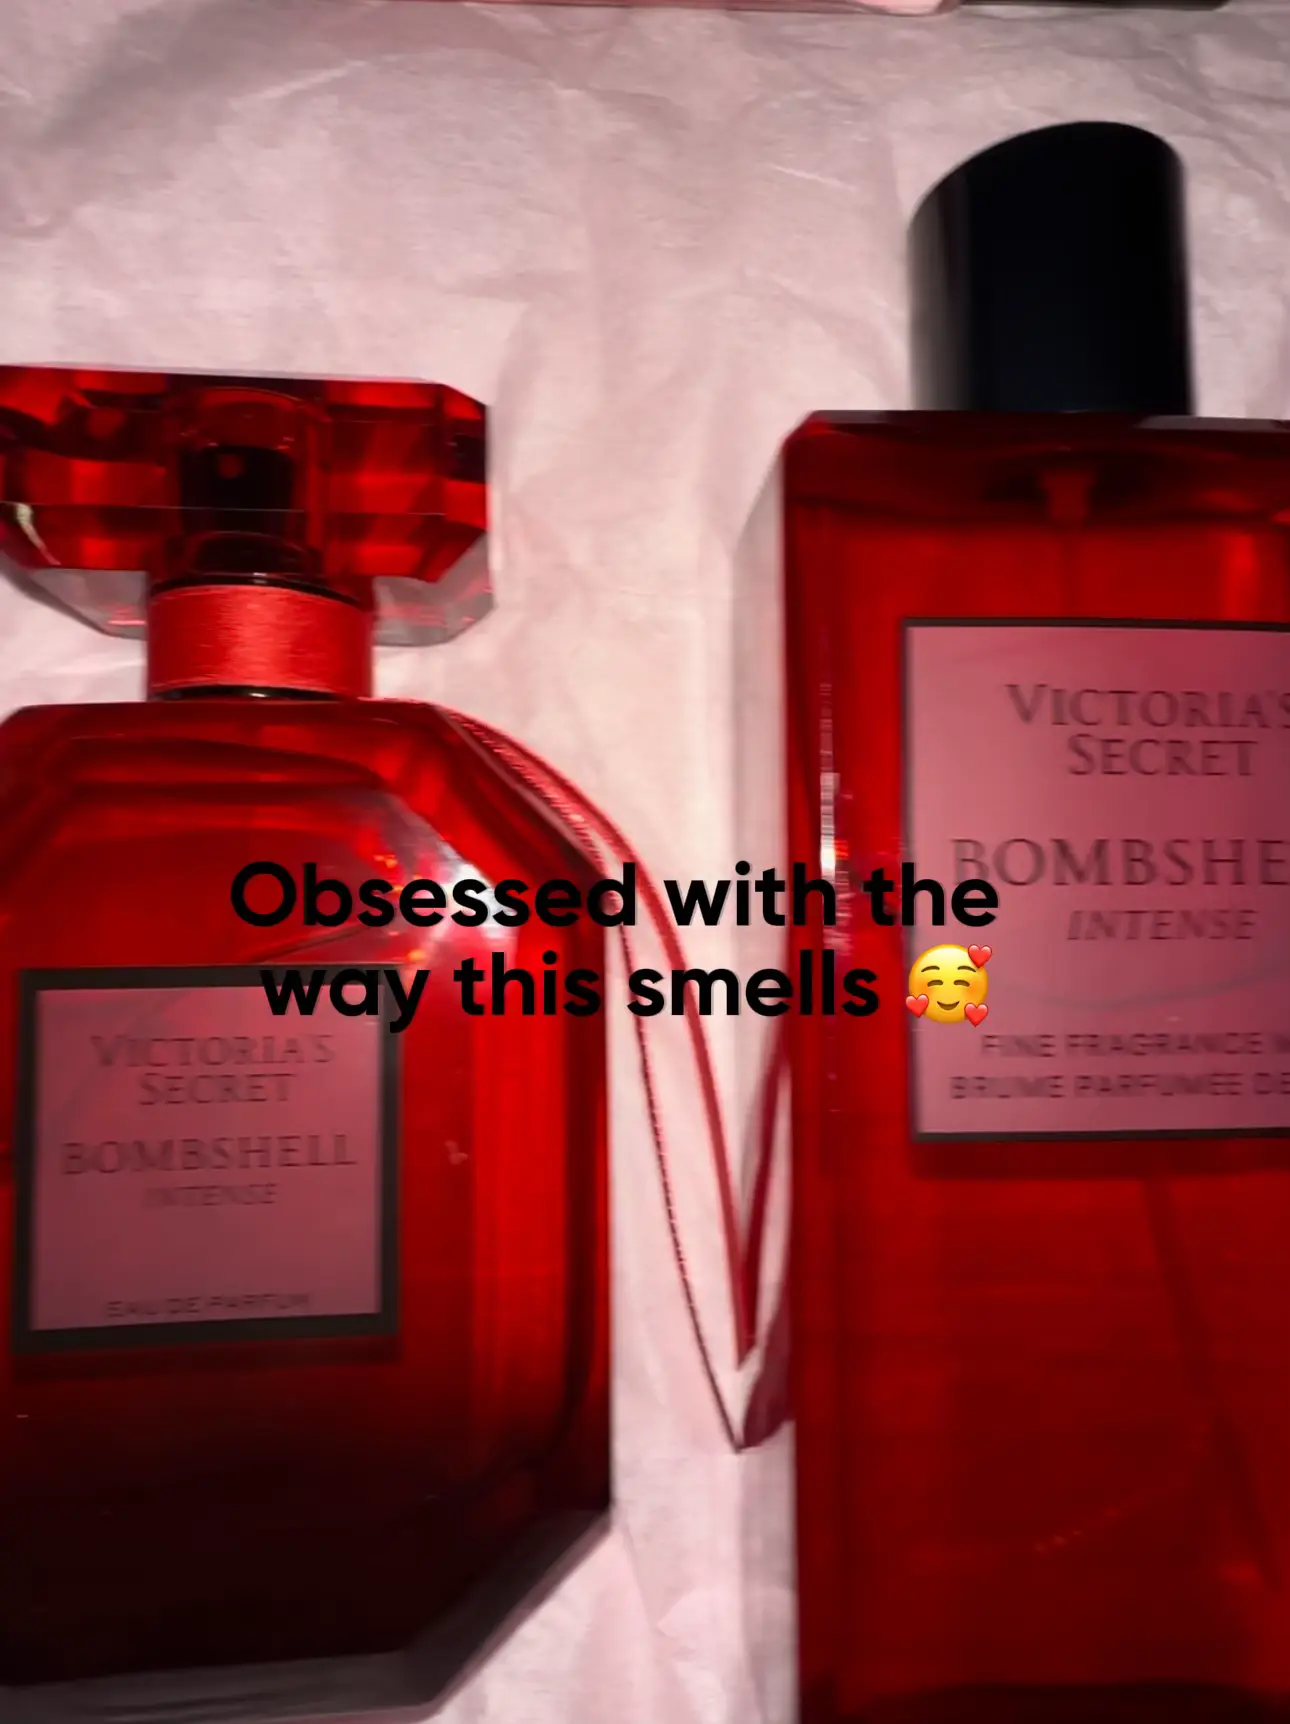 Victoria's Secret New! Bombshell OUD Travel Fine Fragrance Mist 75ml